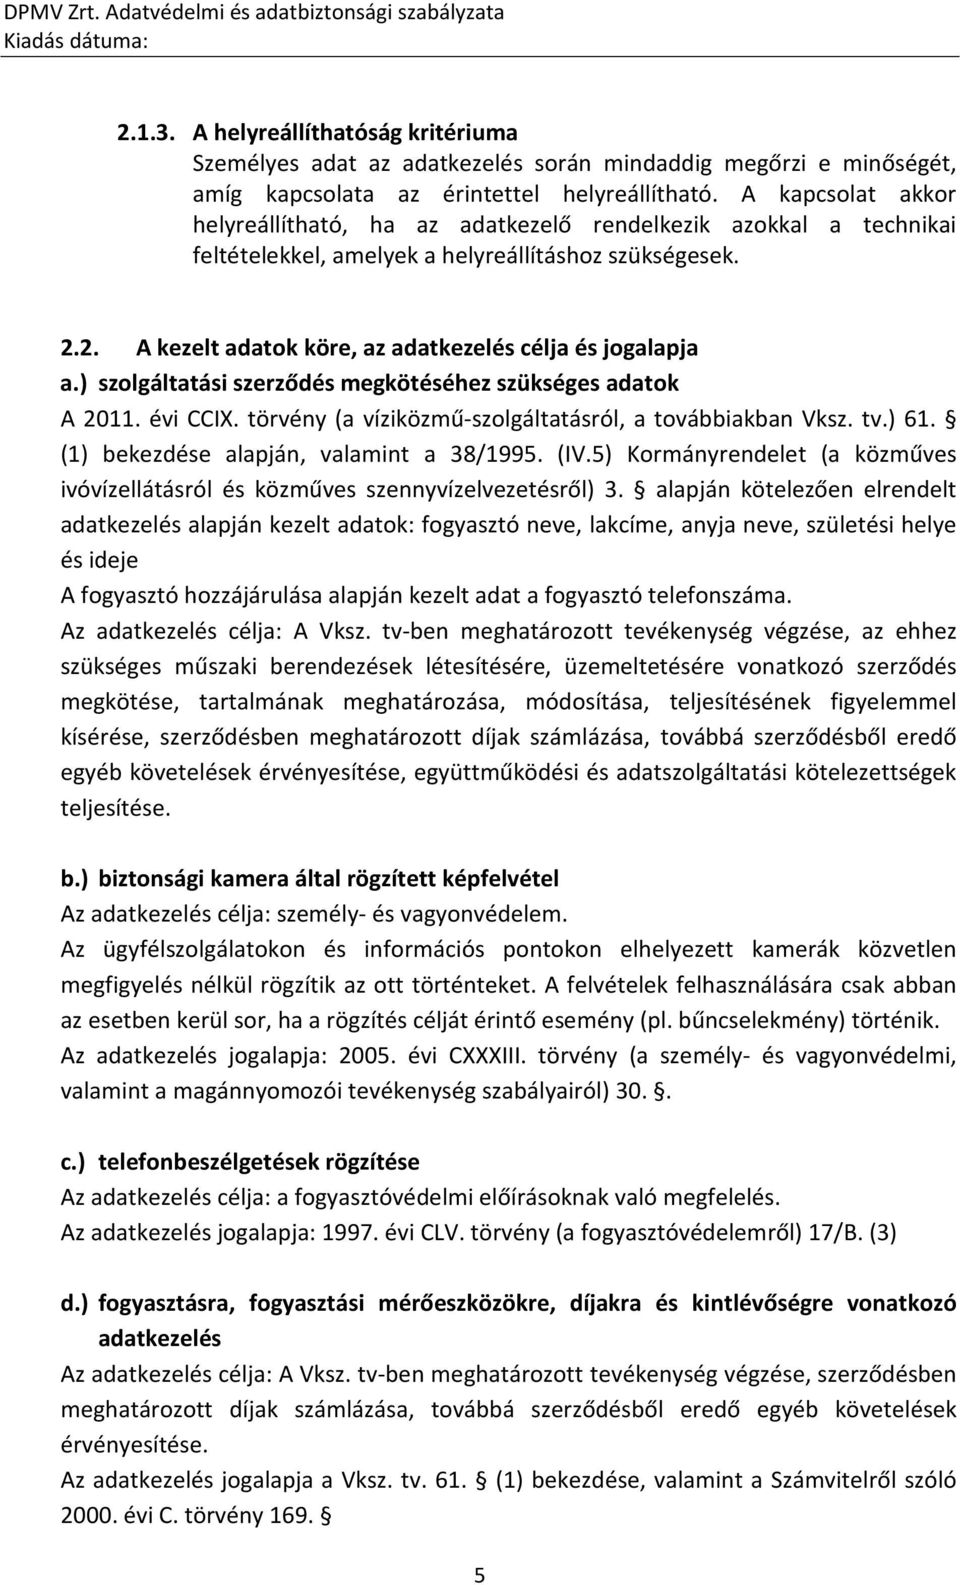 ) szolgáltatási szerződés megkötéséhez szükséges adatok A 2011. évi CCIX. törvény (a víziközmű-szolgáltatásról, a továbbiakban Vksz. tv.) 61. (1) bekezdése alapján, valamint a 38/1995. (IV.